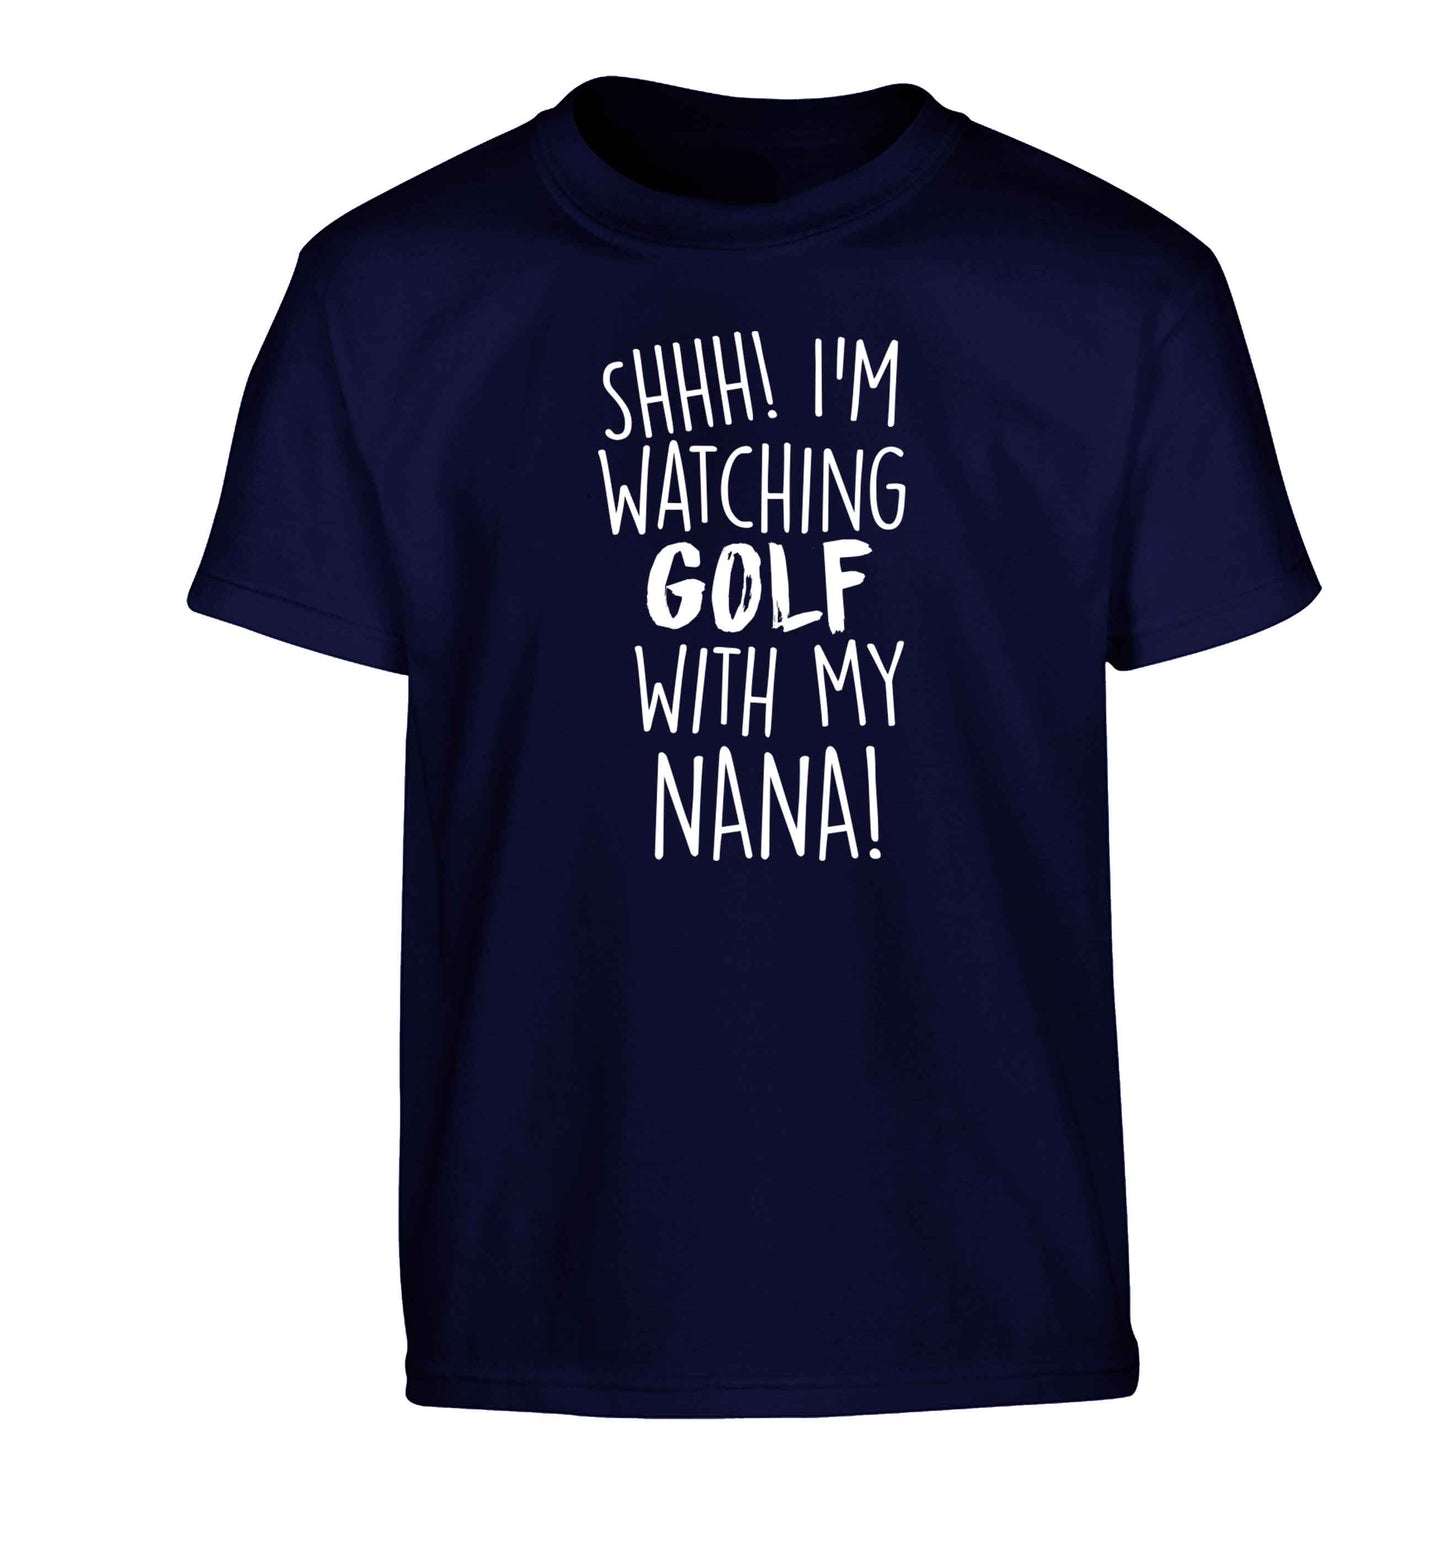 Shh I'm watching golf with my nana Children's navy Tshirt 12-13 Years